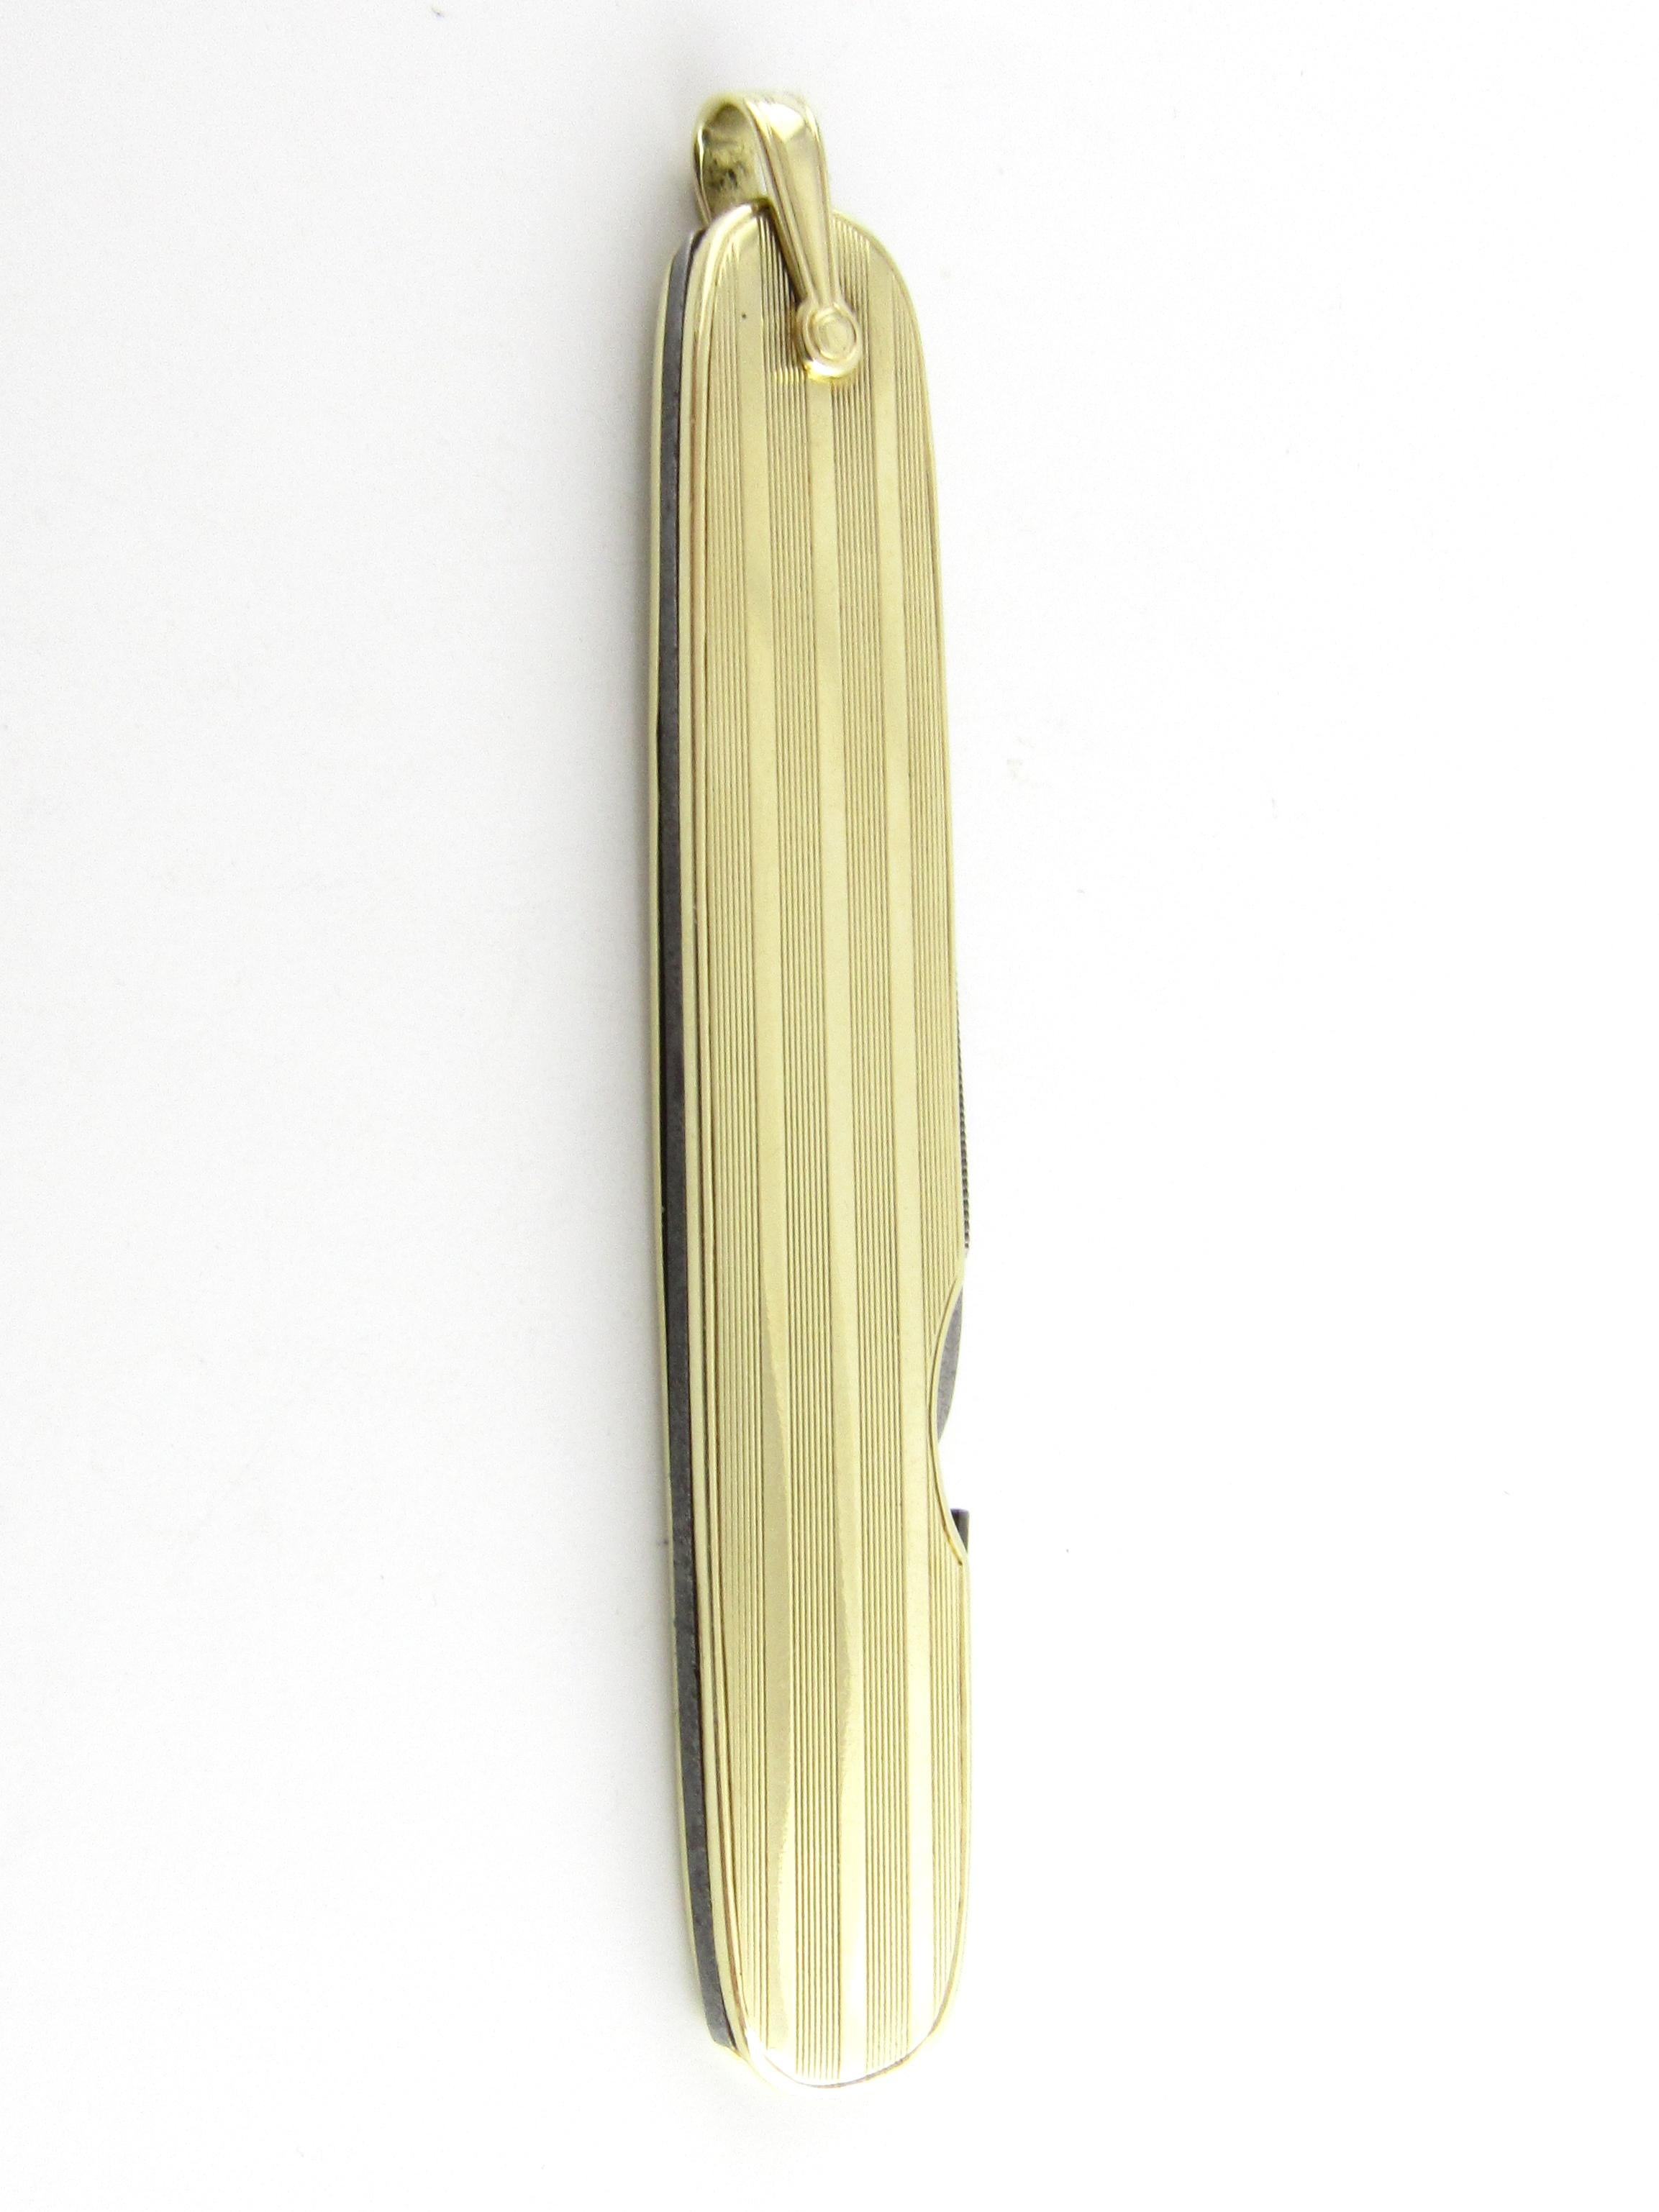 14k gold pocket knife